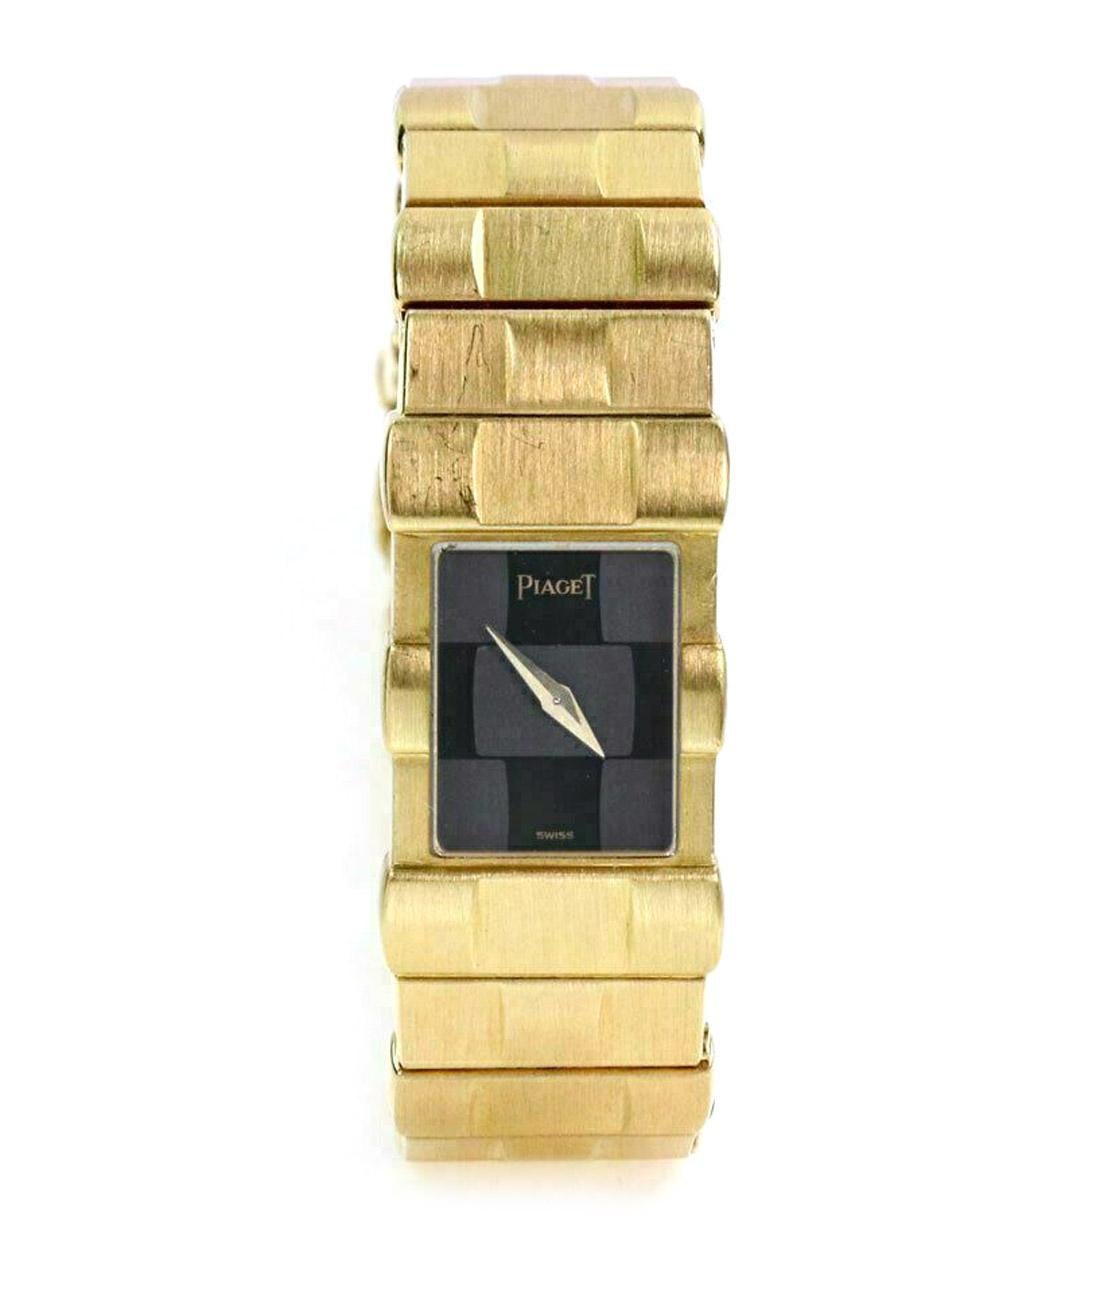 Diese elegante, authentische Damenarmbanduhr von Piaget aus der Collection'S POLO. Das Gehäuse und das Band sind aus massivem 18-karätigem Gelbgold gefertigt und verfügen über ein schönes, massives Goldgliederarmband mit schwarzem Zifferblatt und